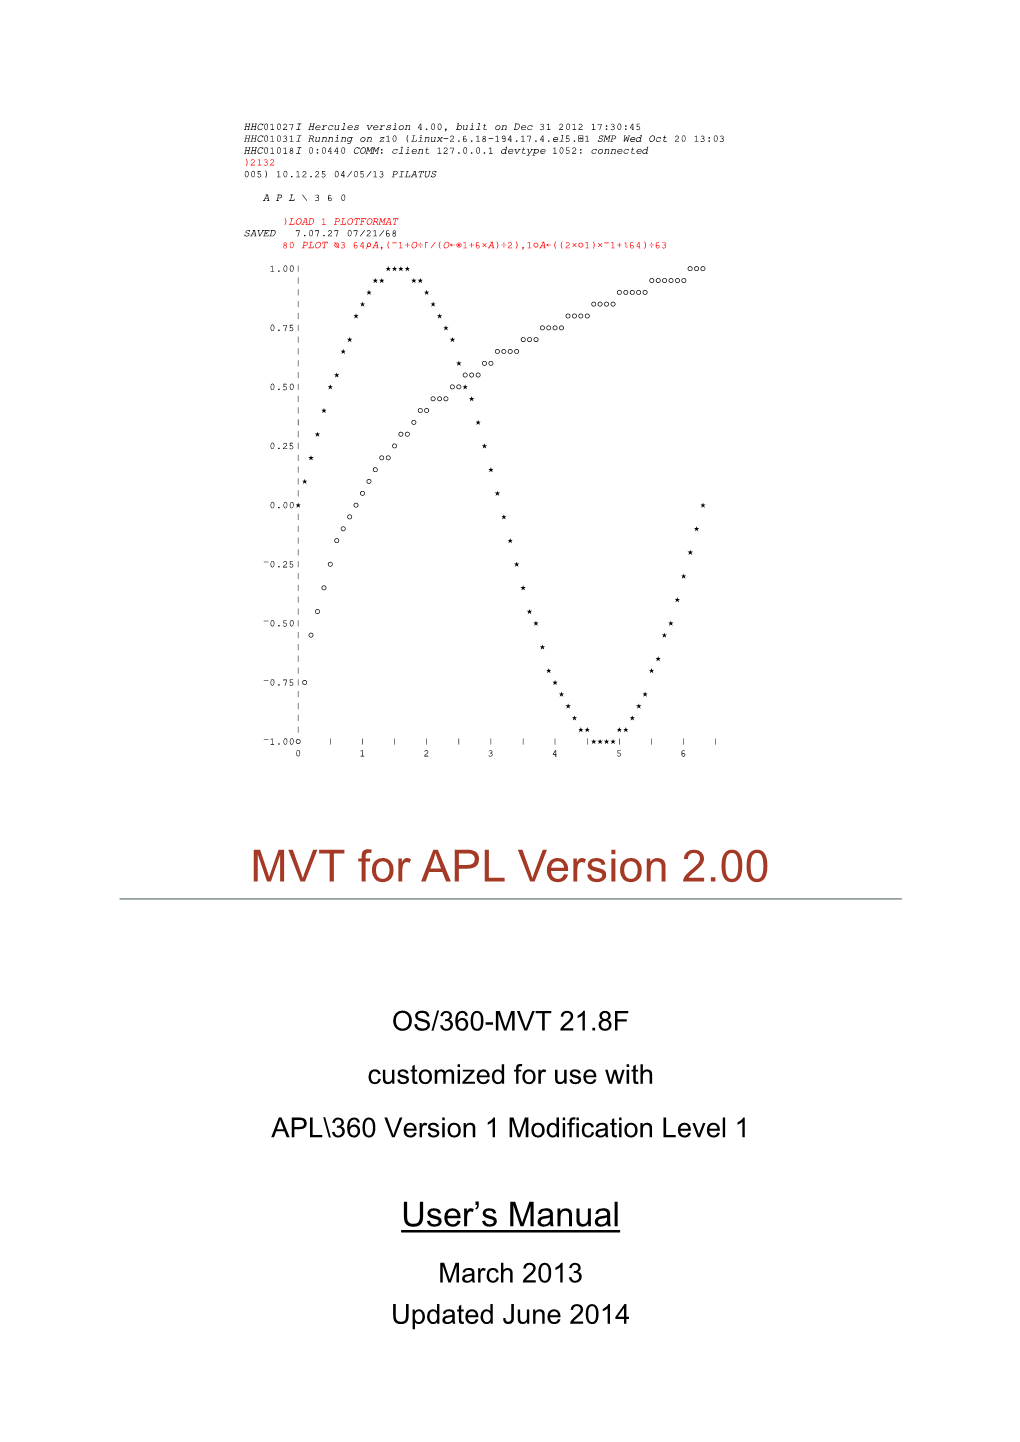 MVT for APL Version 2.00 User's Manual